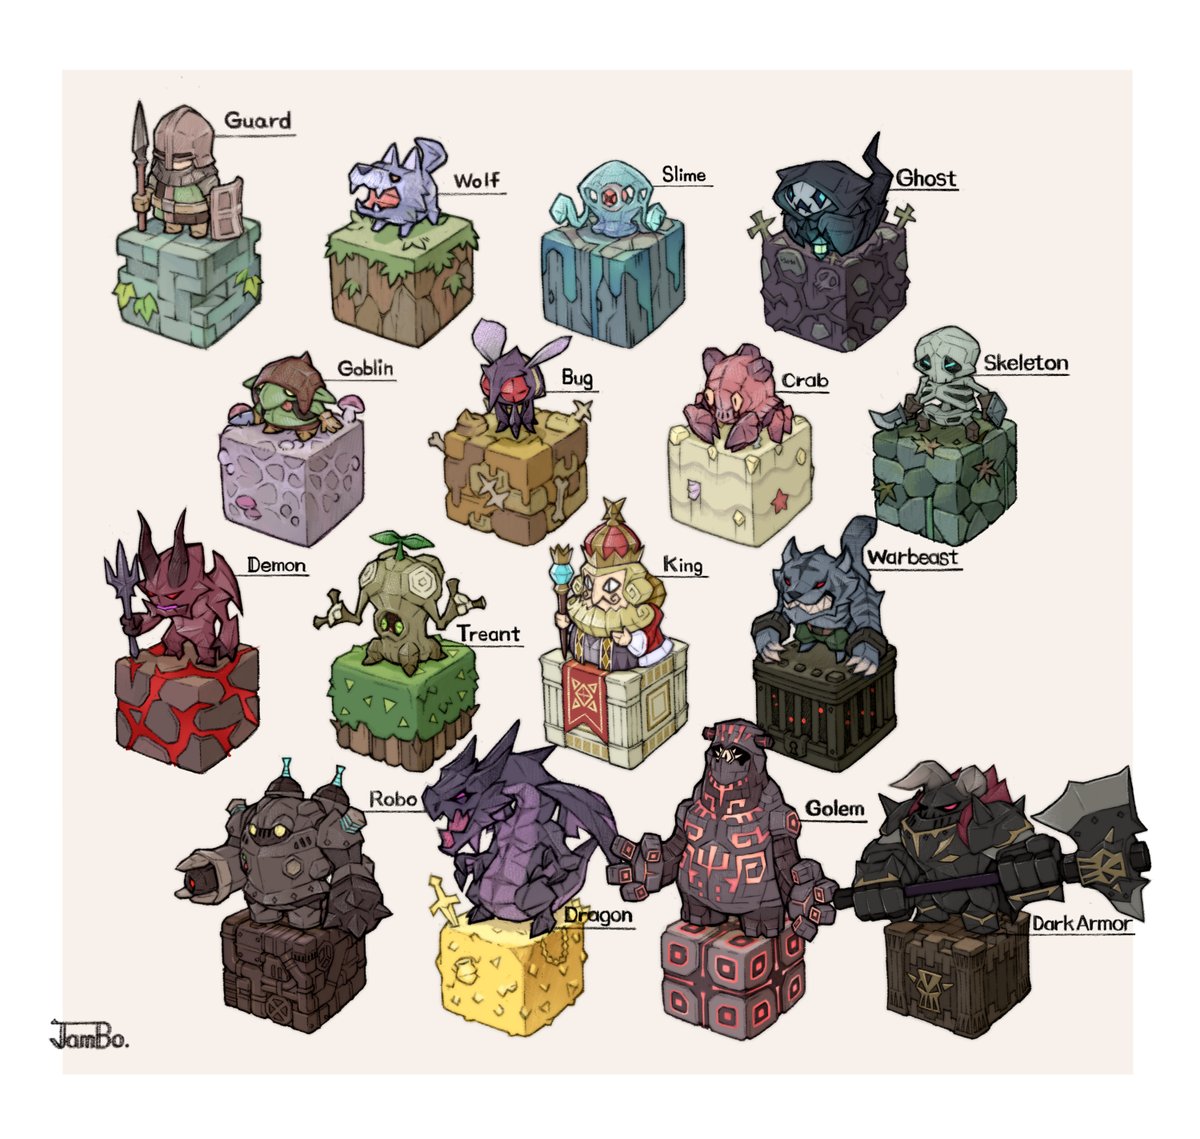 「Cube_Golem and Dark Armor 」|JamBoのイラスト